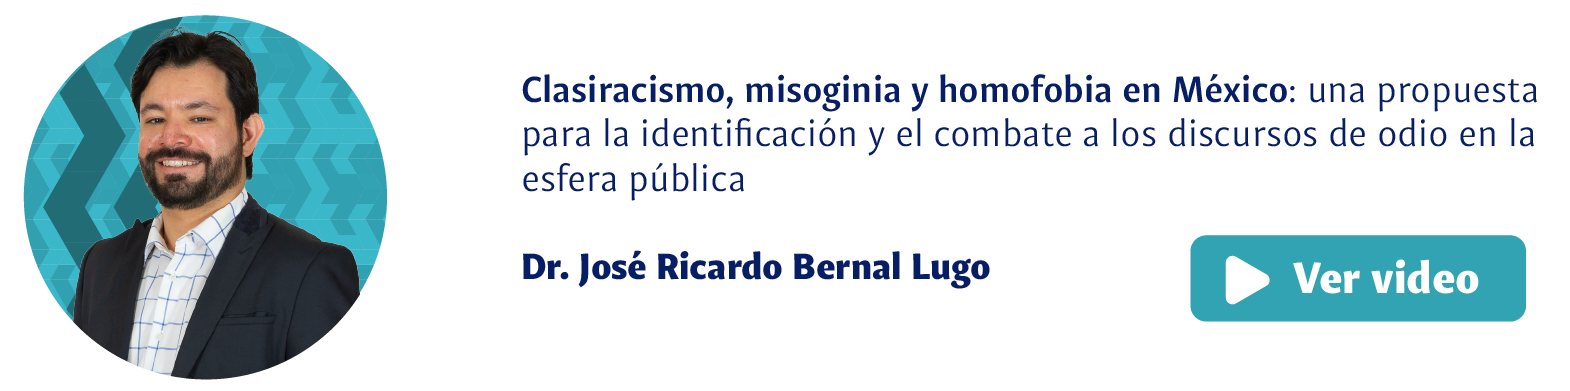 Dr. José Ricardo Bernal Lugo, Clasismo, misoginia y homofobia en México